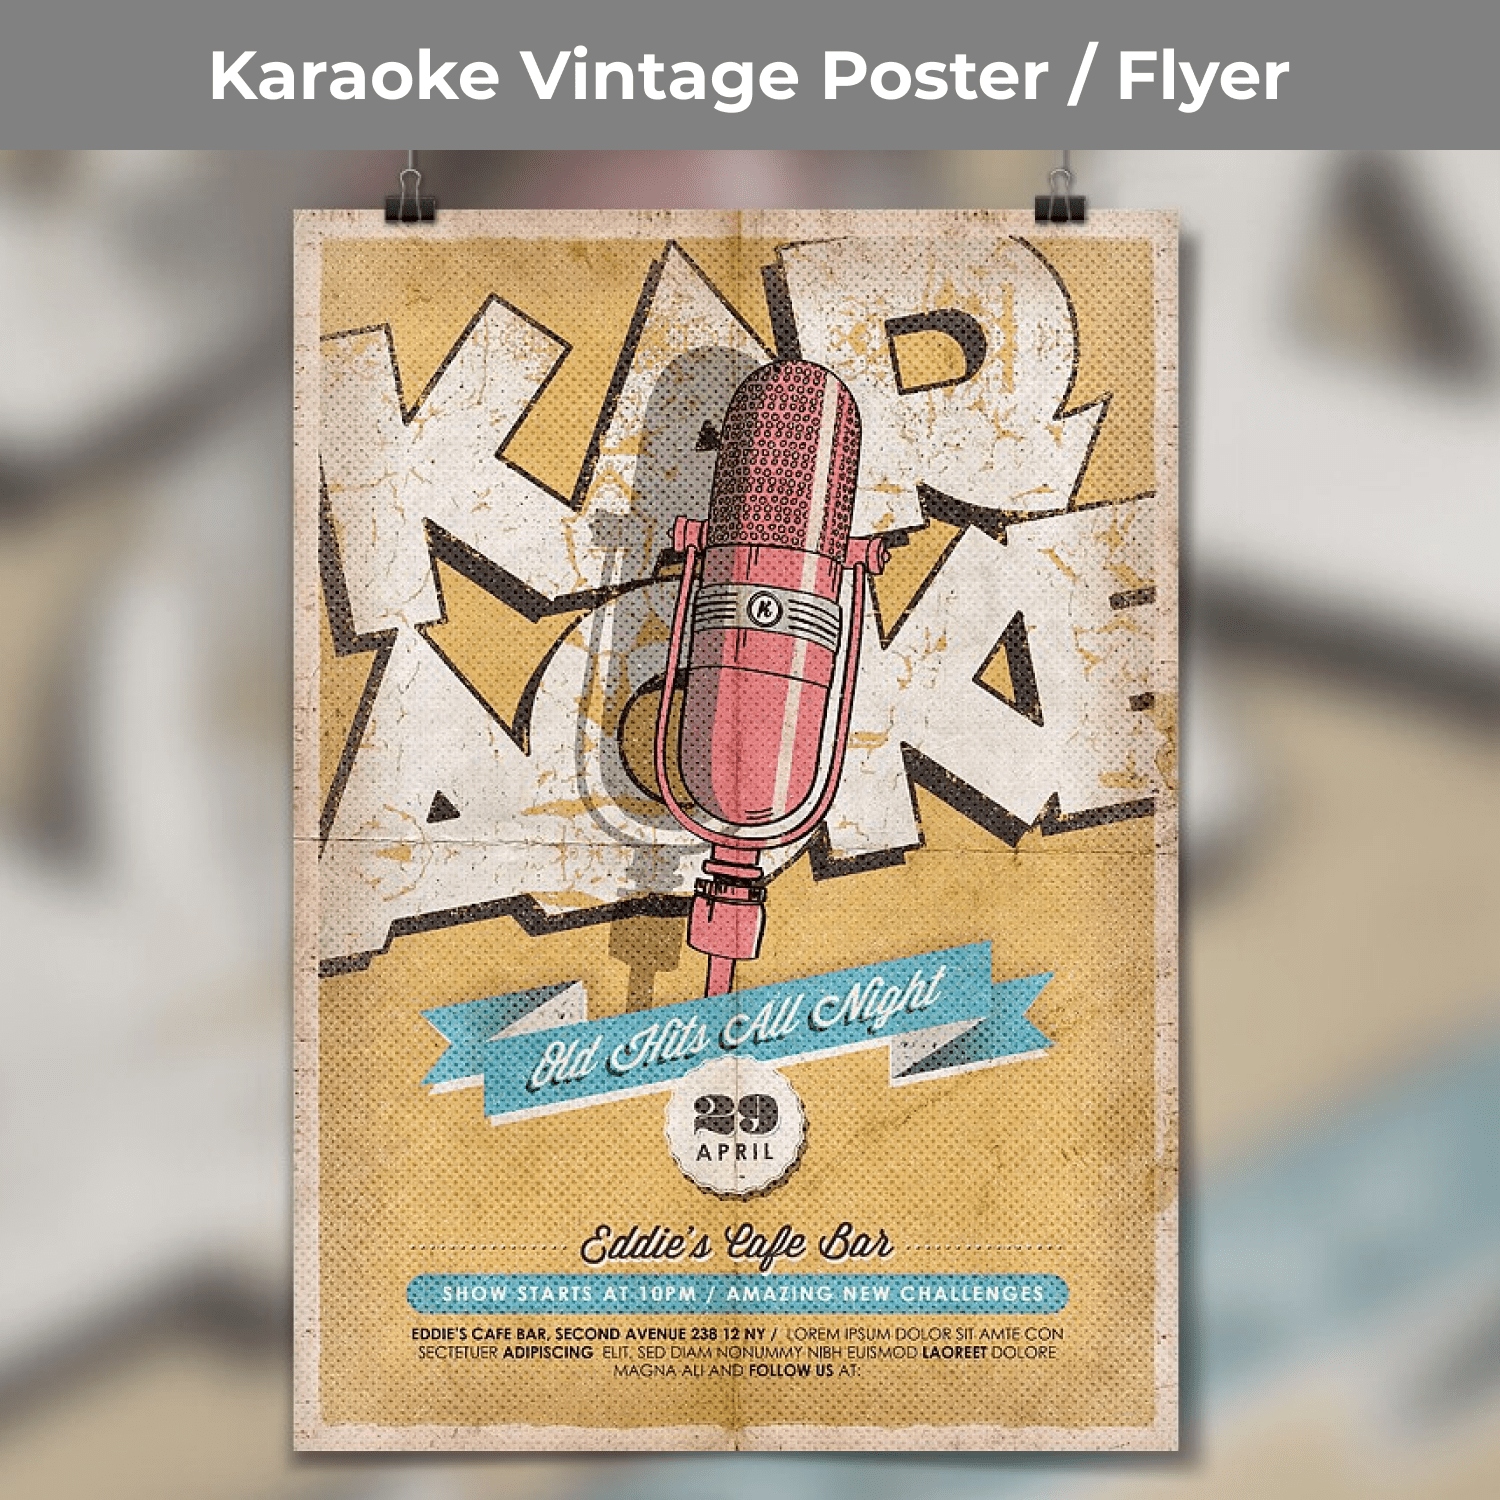 Karaoke Vintage Poster Flyer cover image.